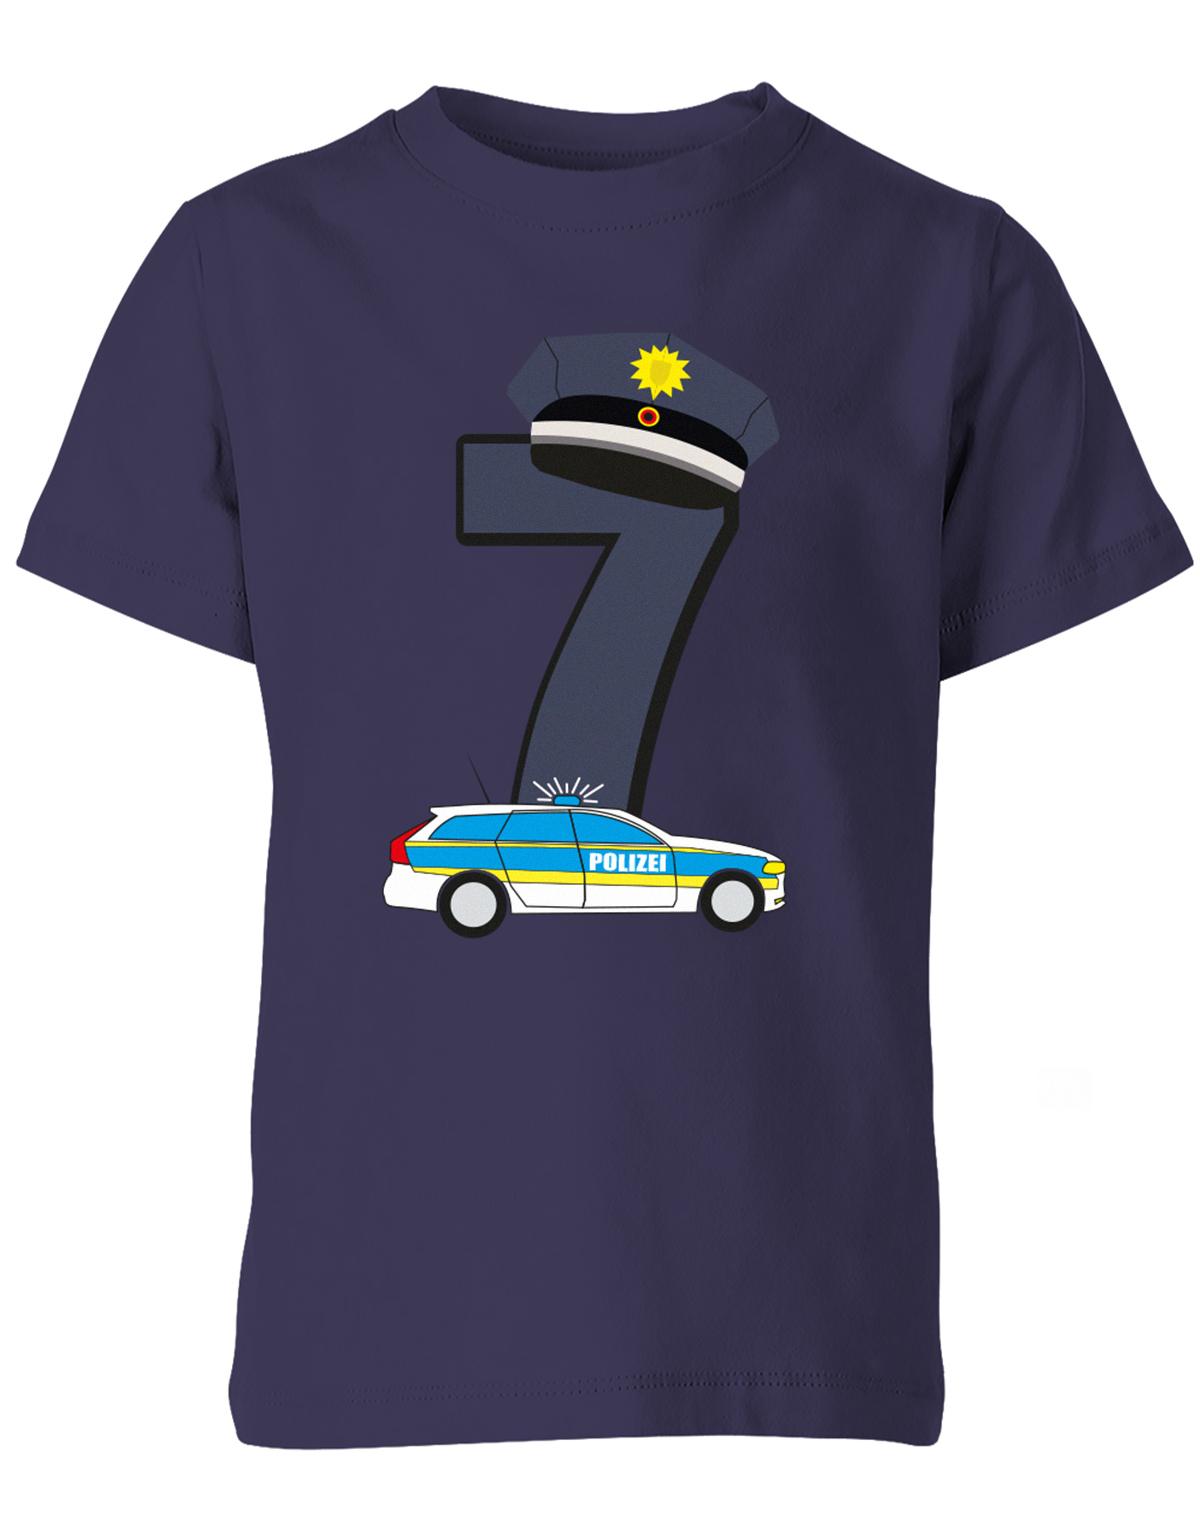 ich-bin-7-polizei-geburtstag-kinder-shirt-navy